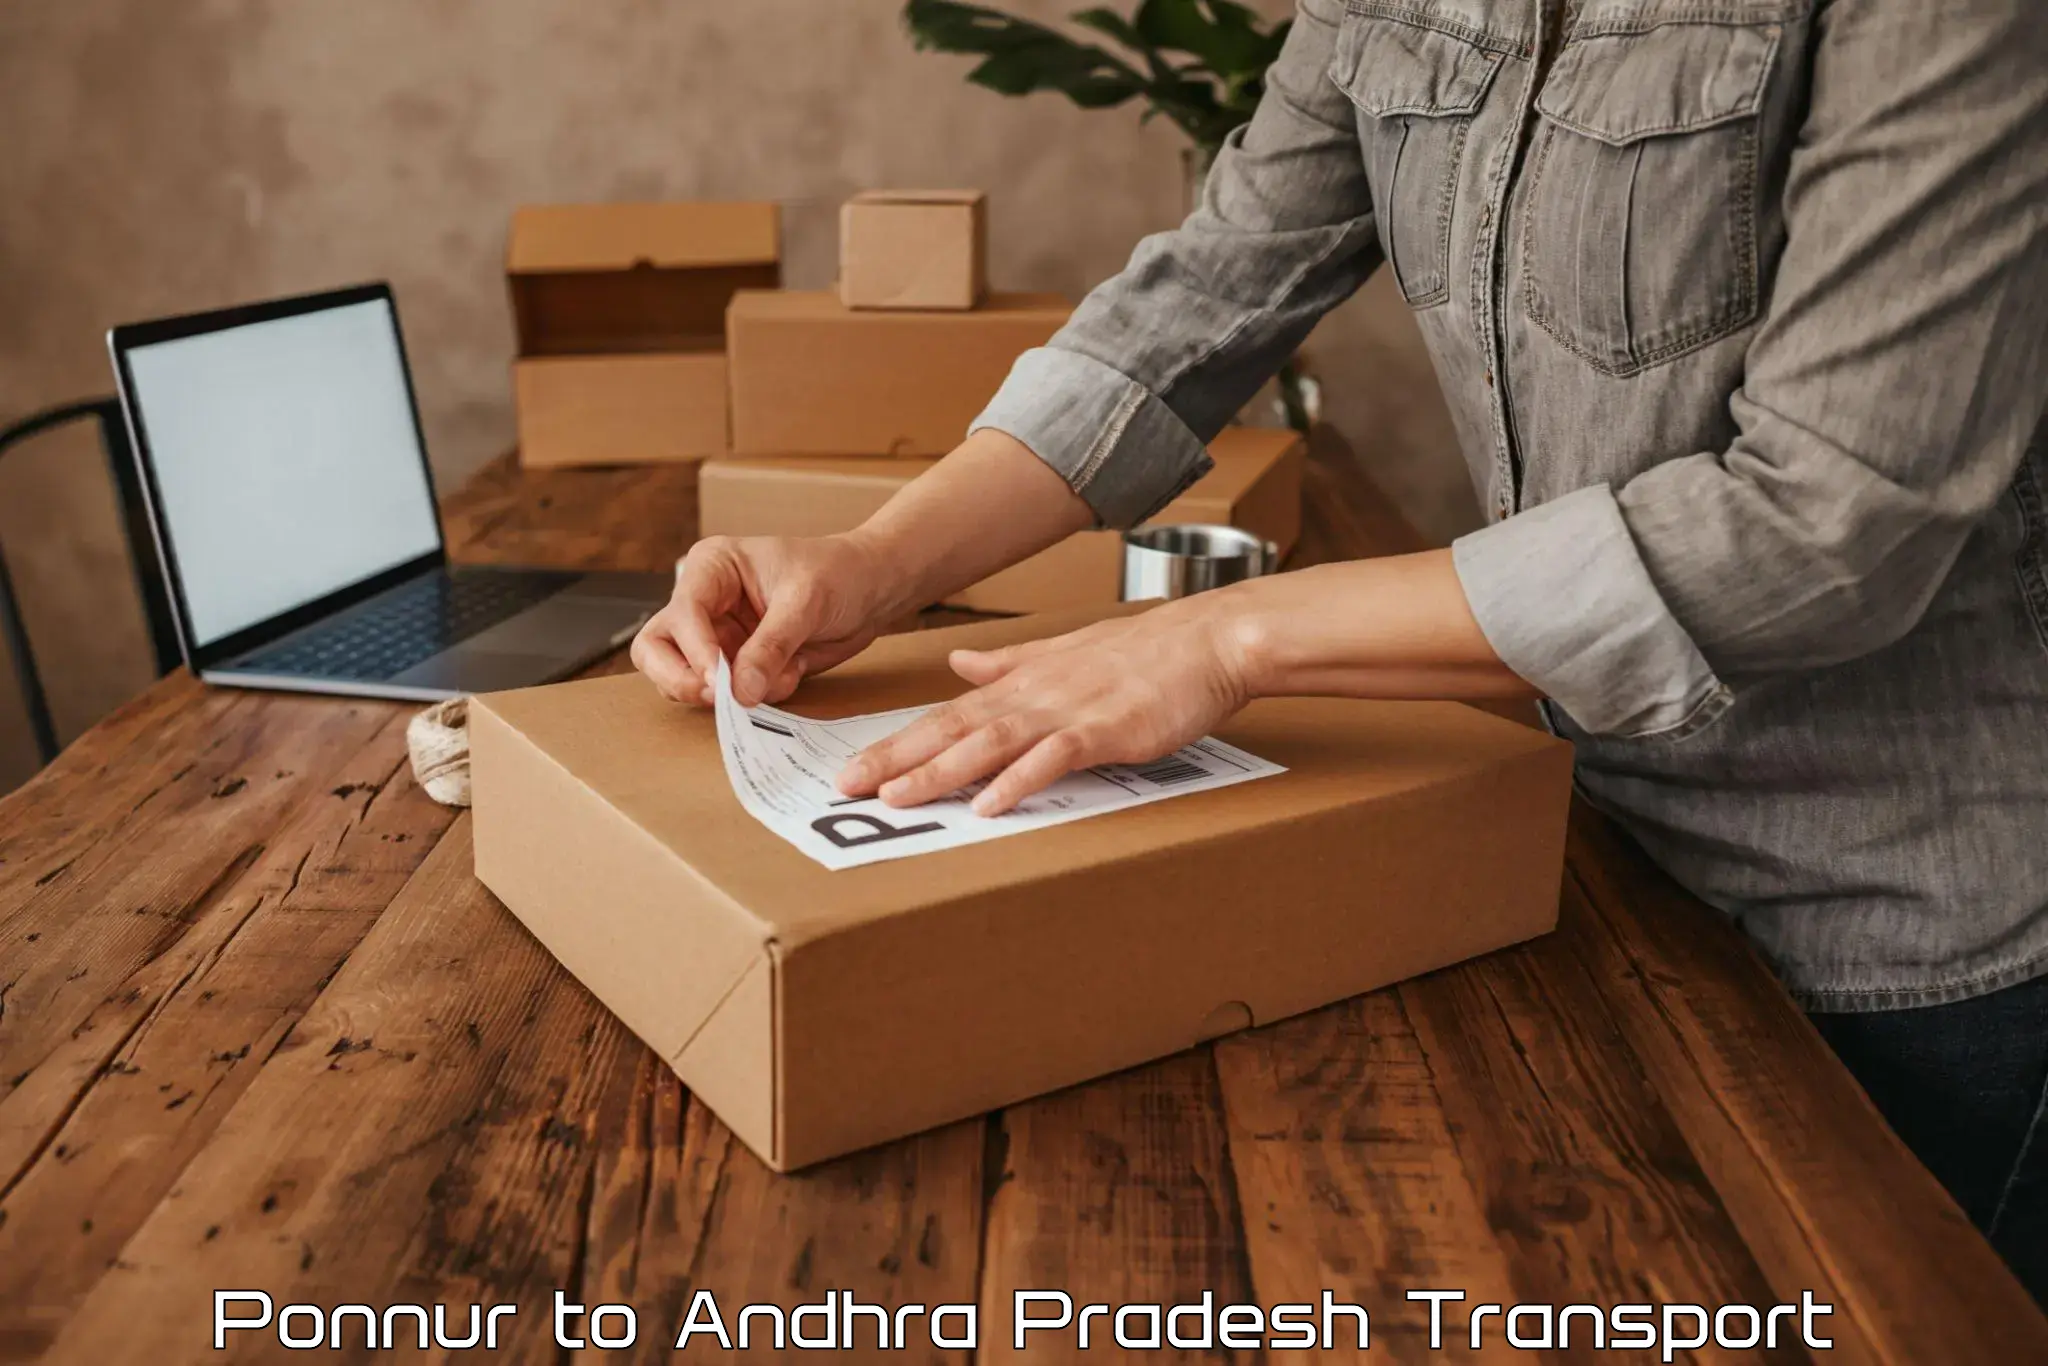 Online transport service Ponnur to Vempalli